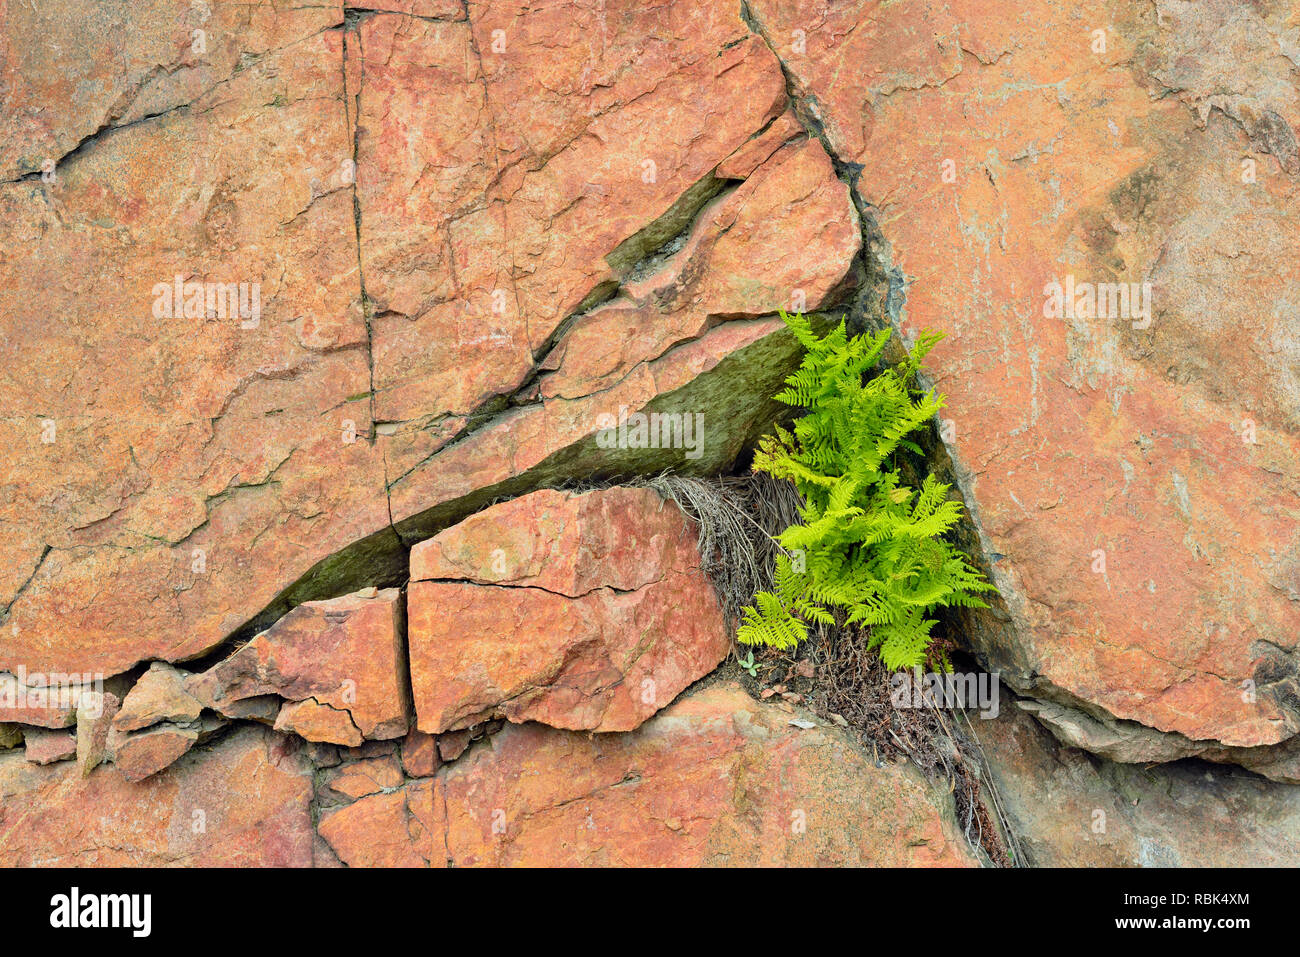 Hay-parfumées fougères poussant à partir d'une fissure dans une roche, près de la route du lac Onaping, Ontario, Canada Banque D'Images